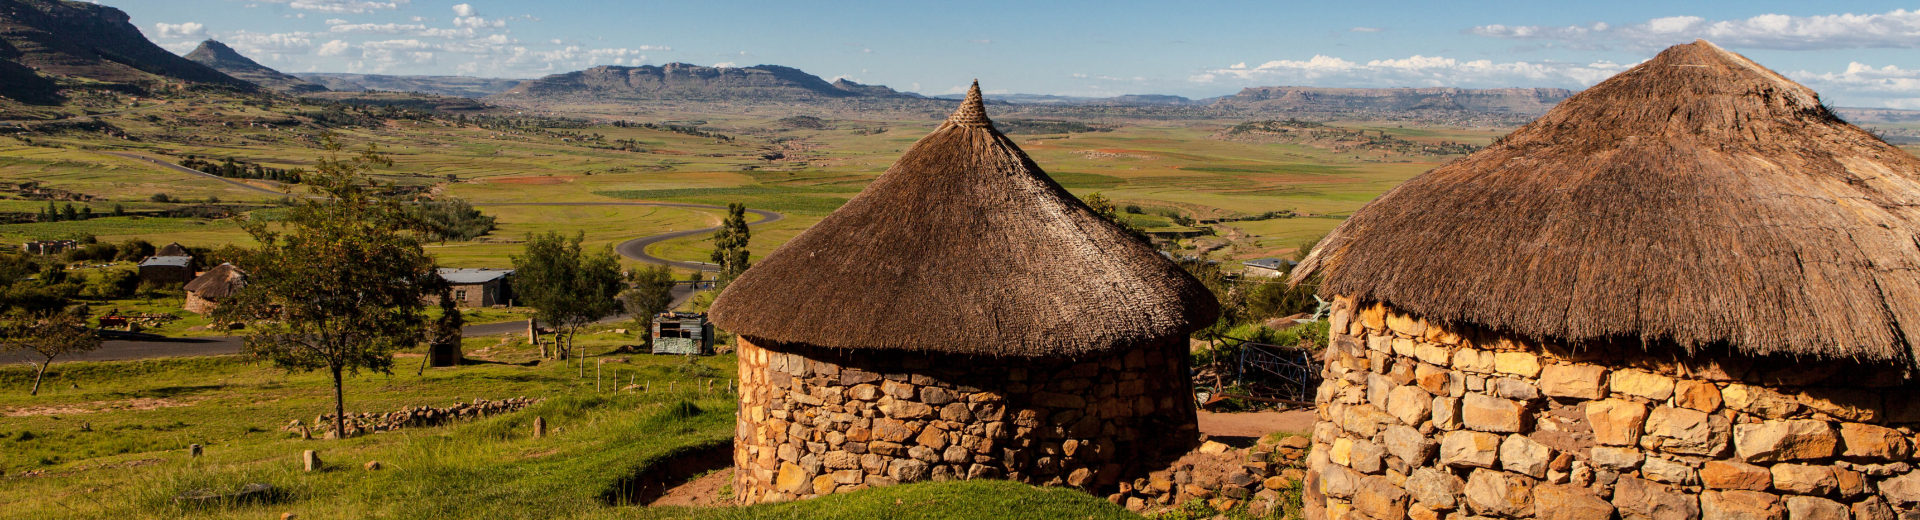 Reizen naar Lesotho